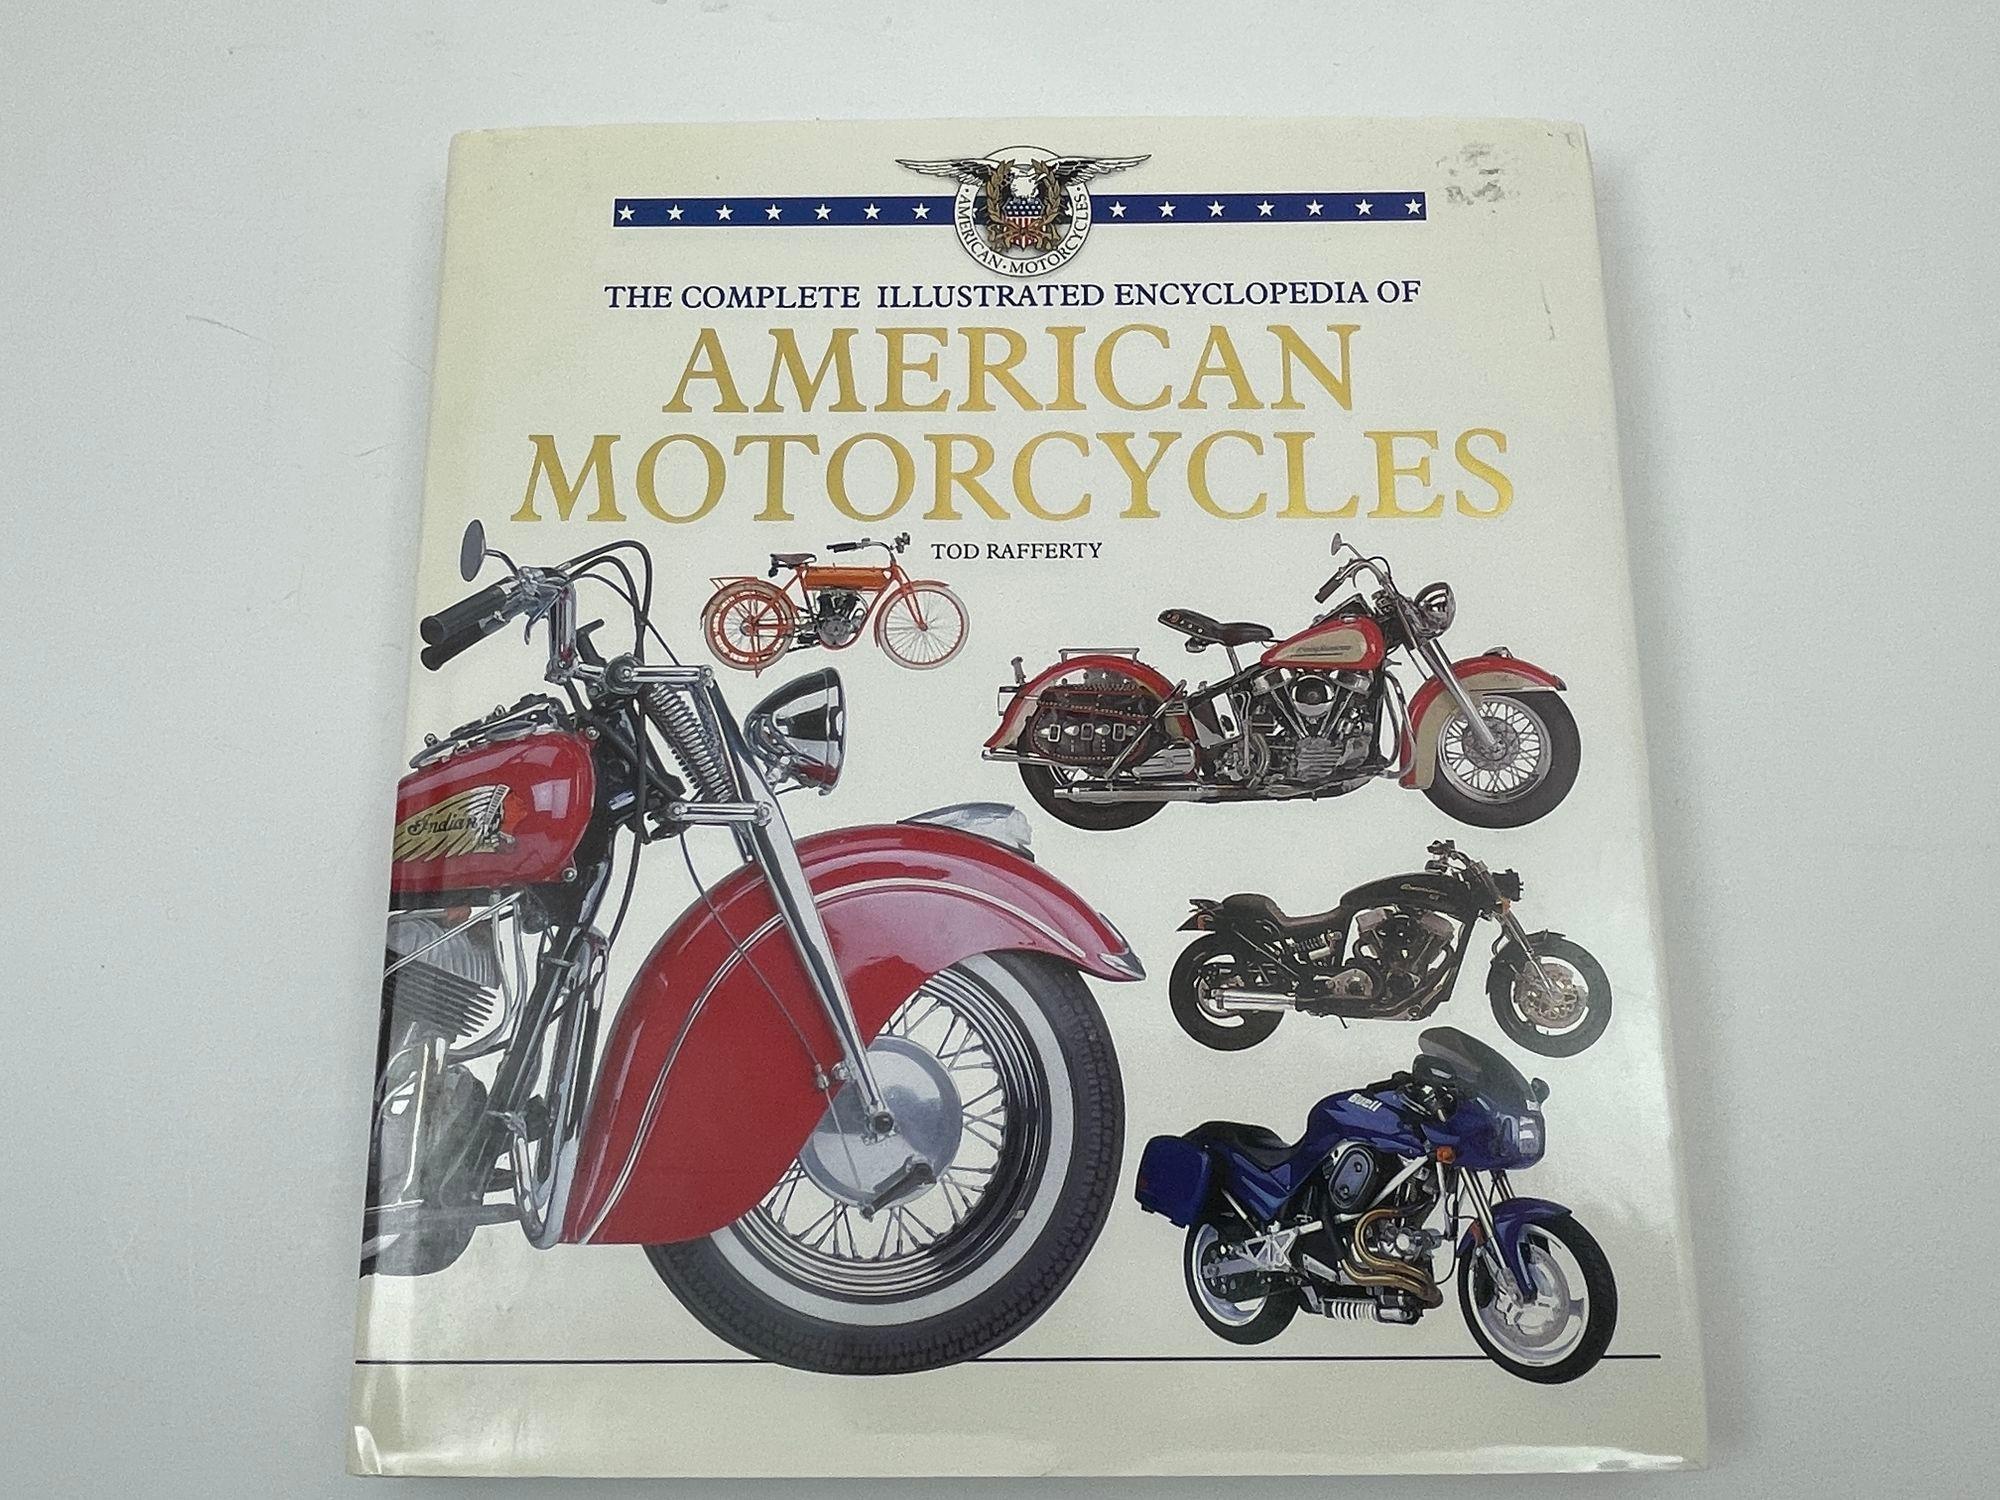 L'encyclopédie complète et illustrée des motos américaines par Tod Rafferty.
Cette histoire richement illustrée parcourt le 20e siècle en explorant des fabricants américains de motos aussi populaires que Pope, Thor et Merkel. Le voyage de Davidson